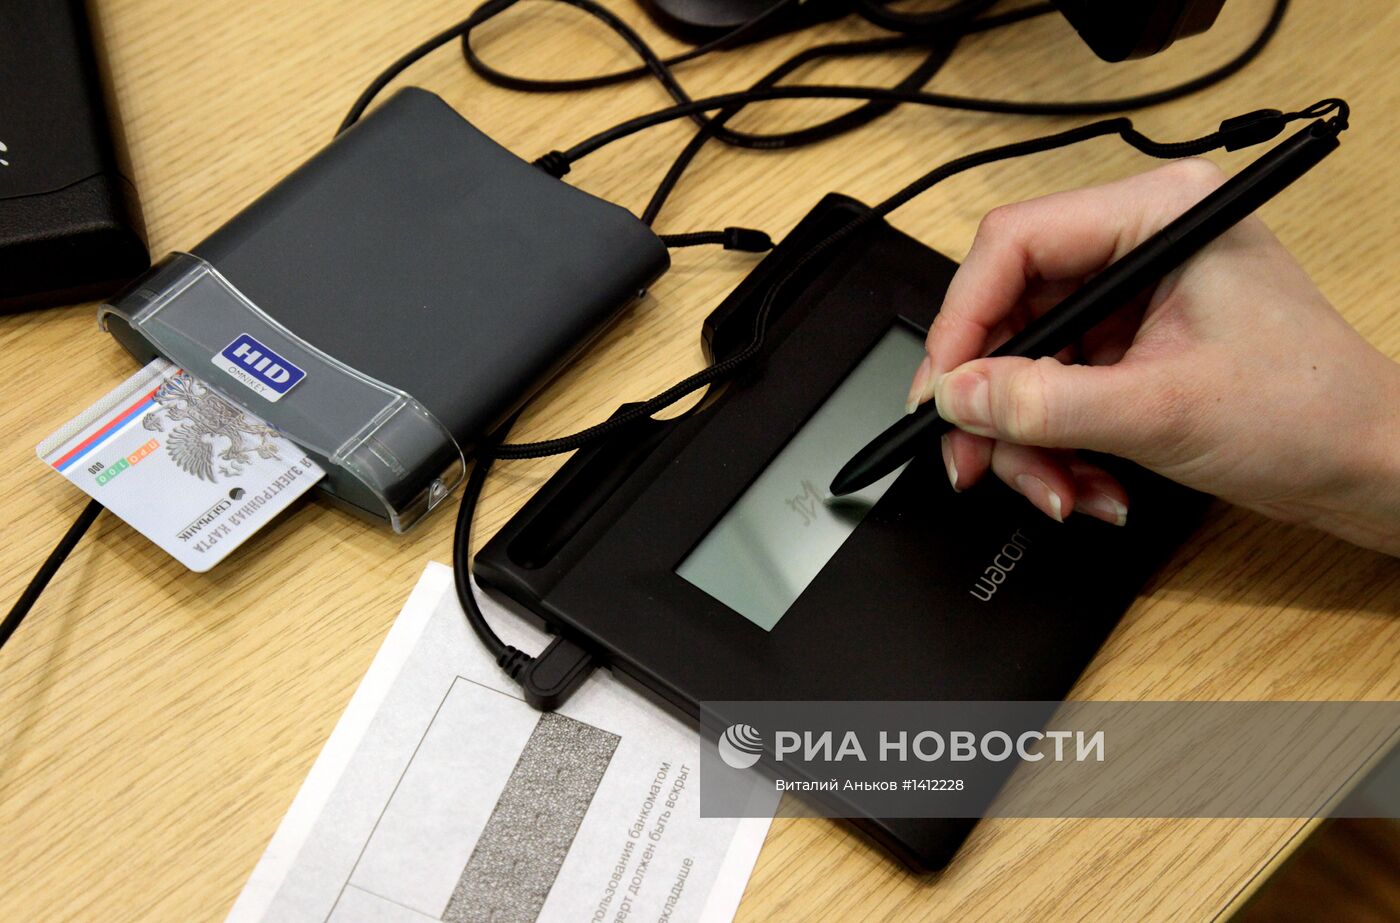 Универсальные электронные карты появились в Приморском крае